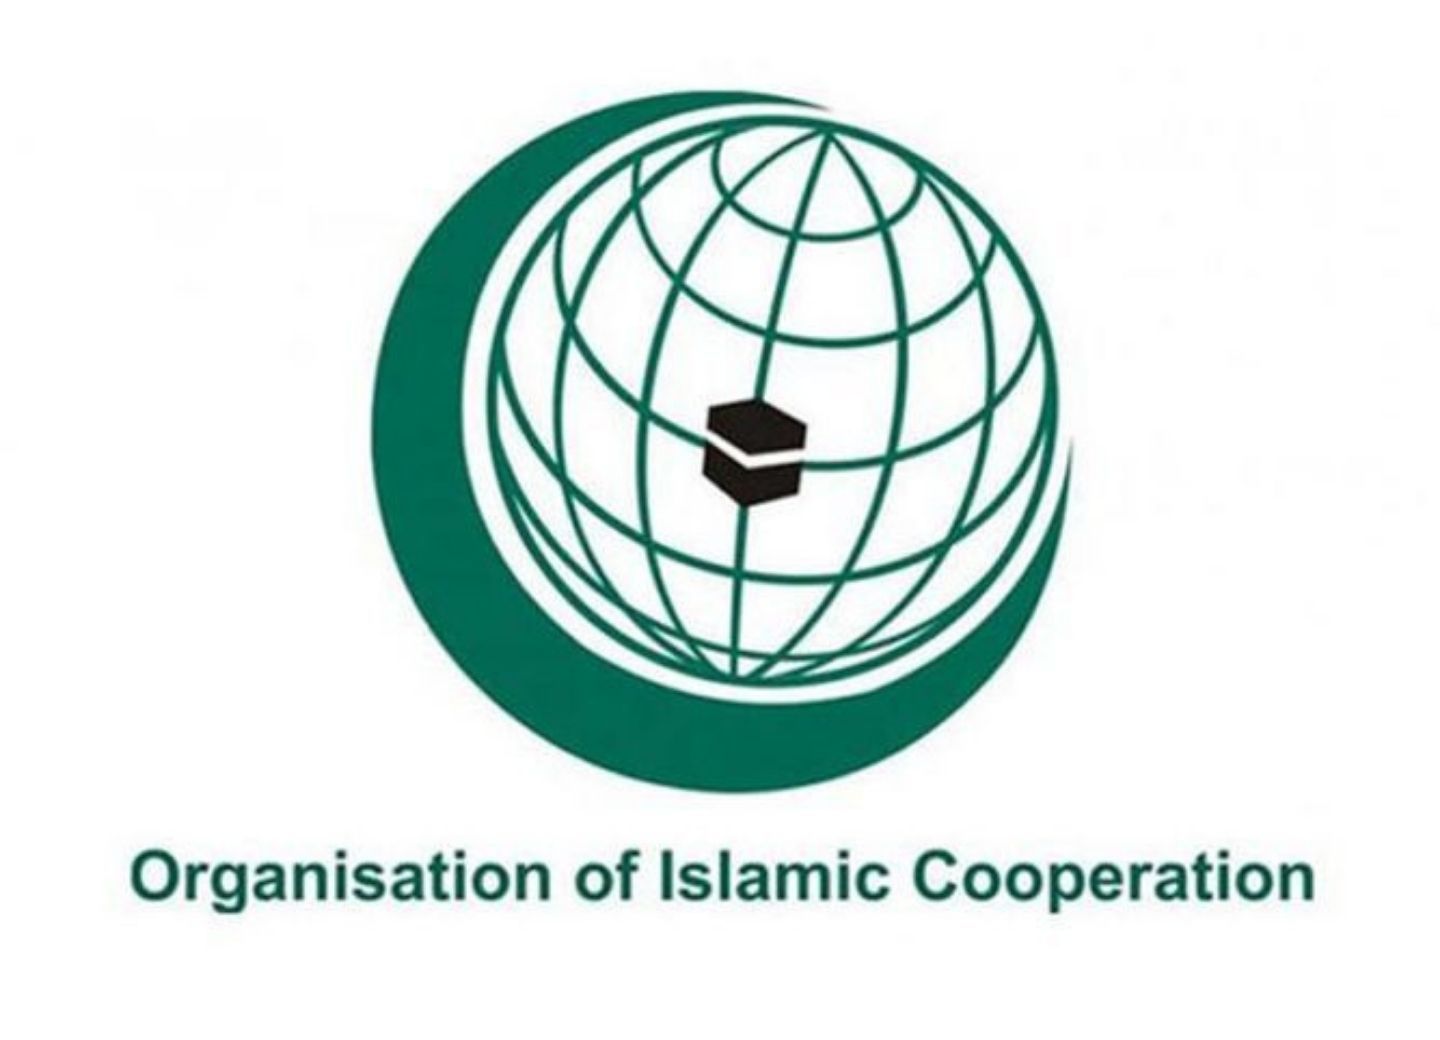 Организация исламская конференция. ОИС организация Исламского сотрудничества. Флаг организации Исламского сотрудничества. Организация Исламская конференция (ОИК). Организация Исламского сотрудничества эмблема.